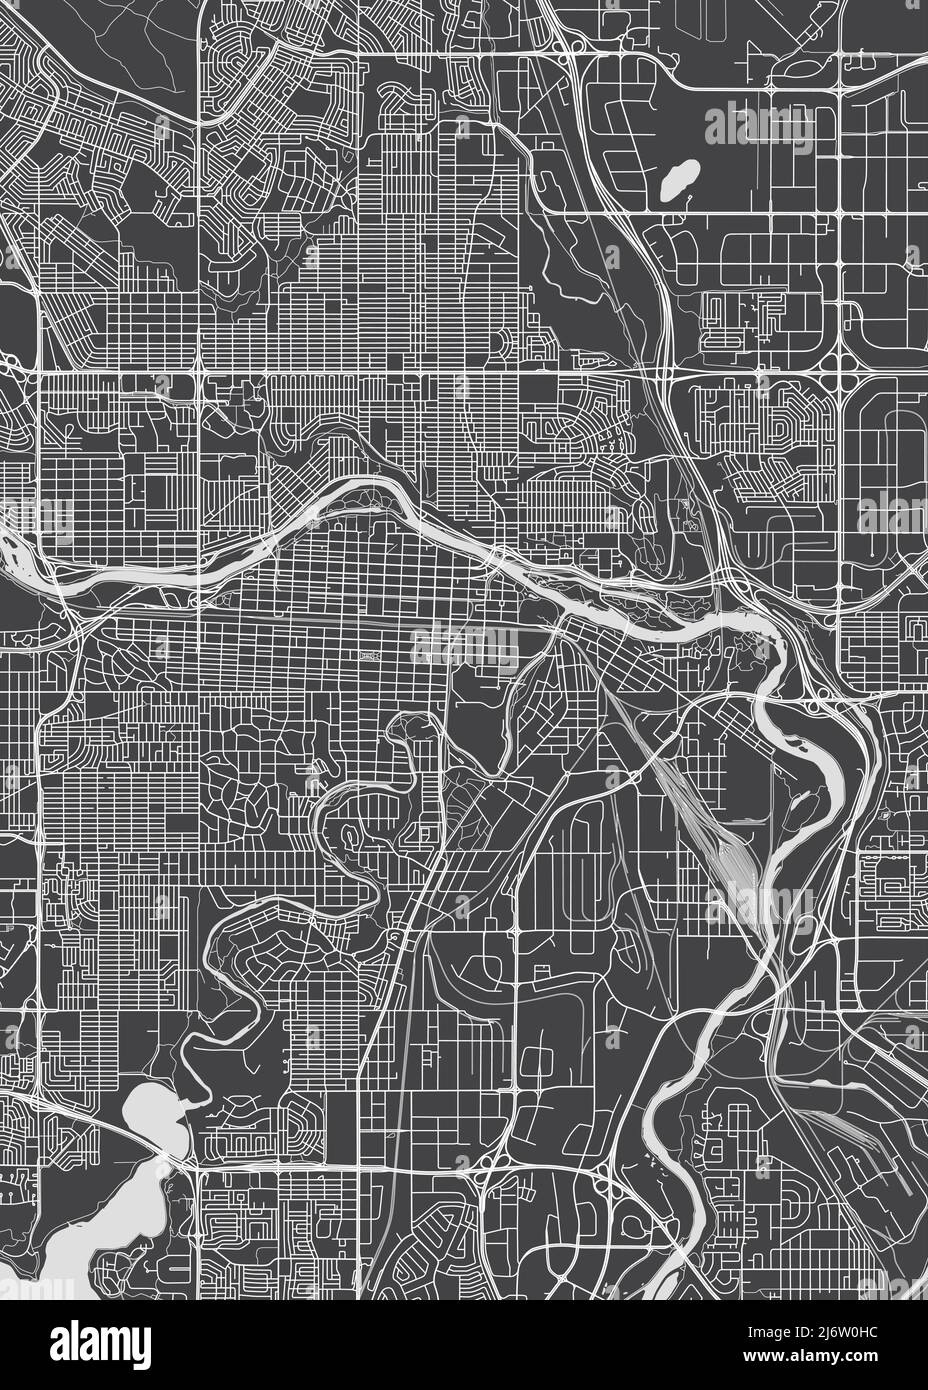 Stadtplan Calgary, monochromer Detailplan, Vektorgrafik Stock Vektor